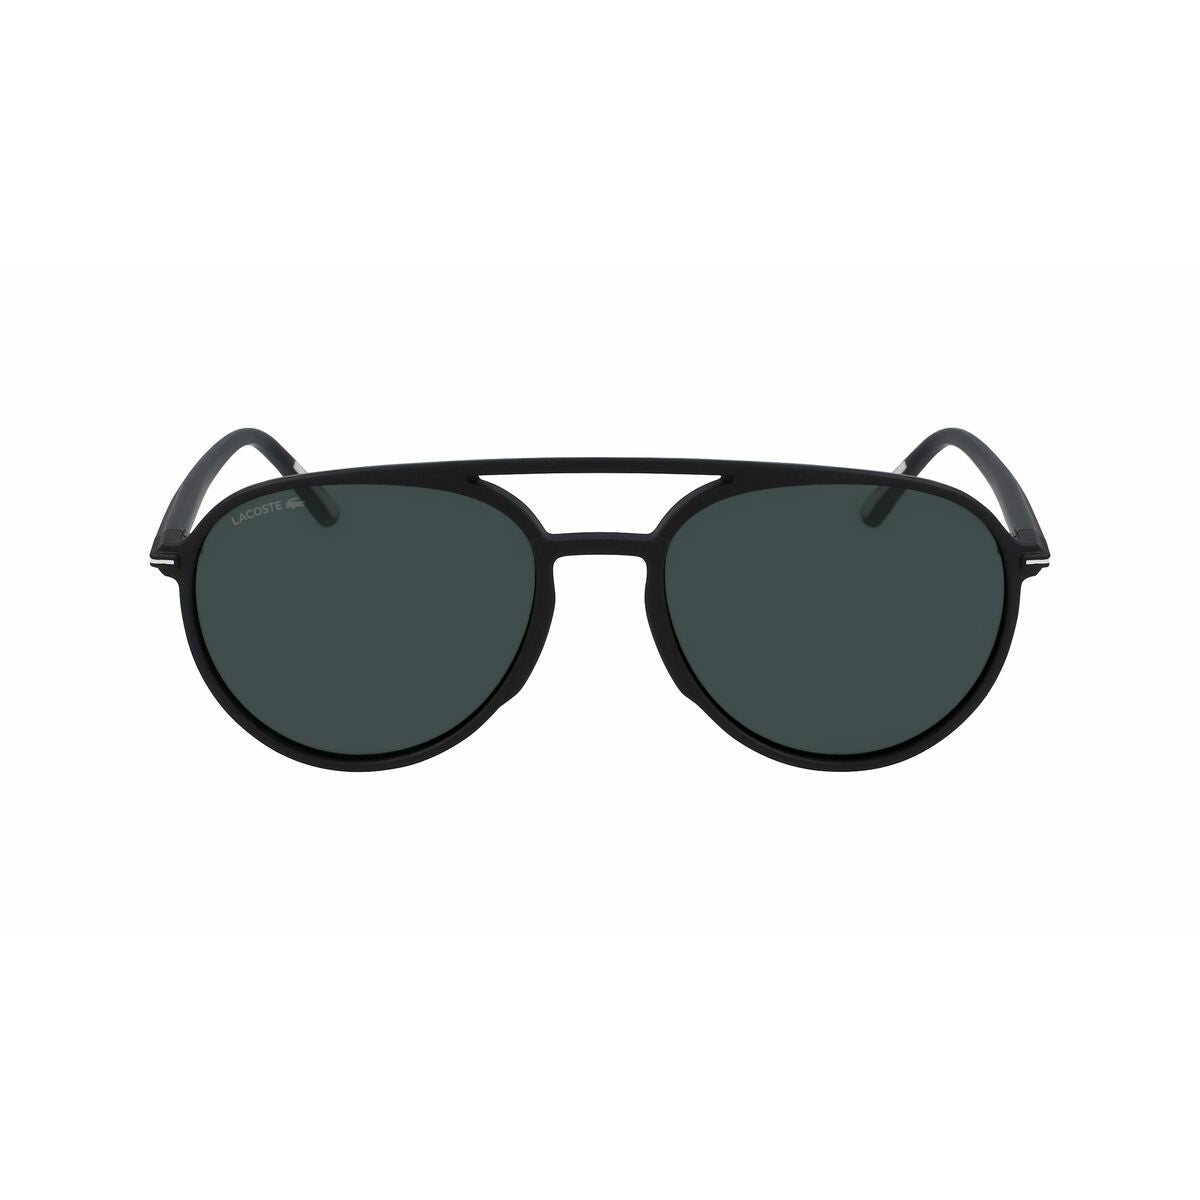 Men's Sunglasses Lacoste L605SND-001